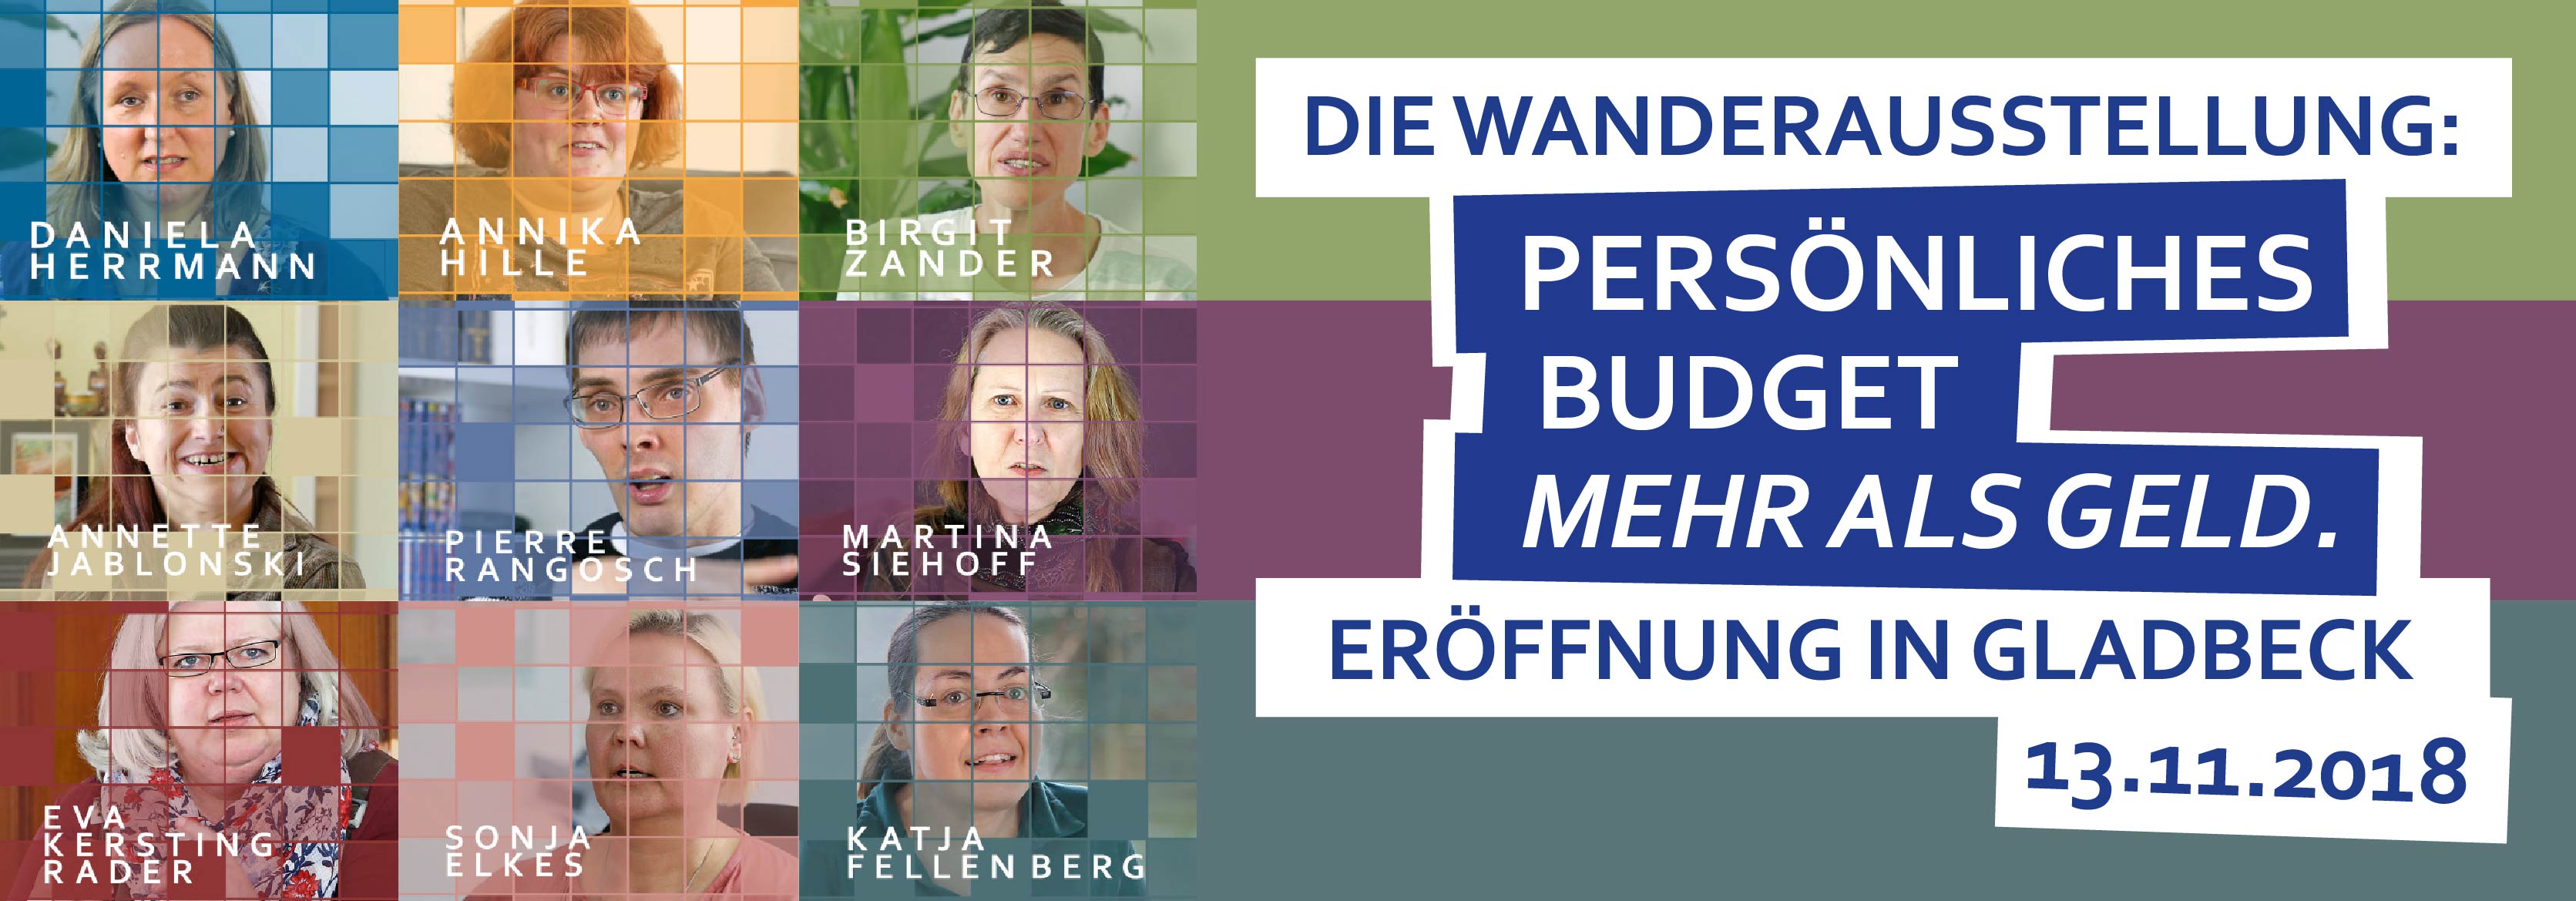 Wanderausstellung Persönliches Budget Eröffnung in Gladbeck 13.11.2018